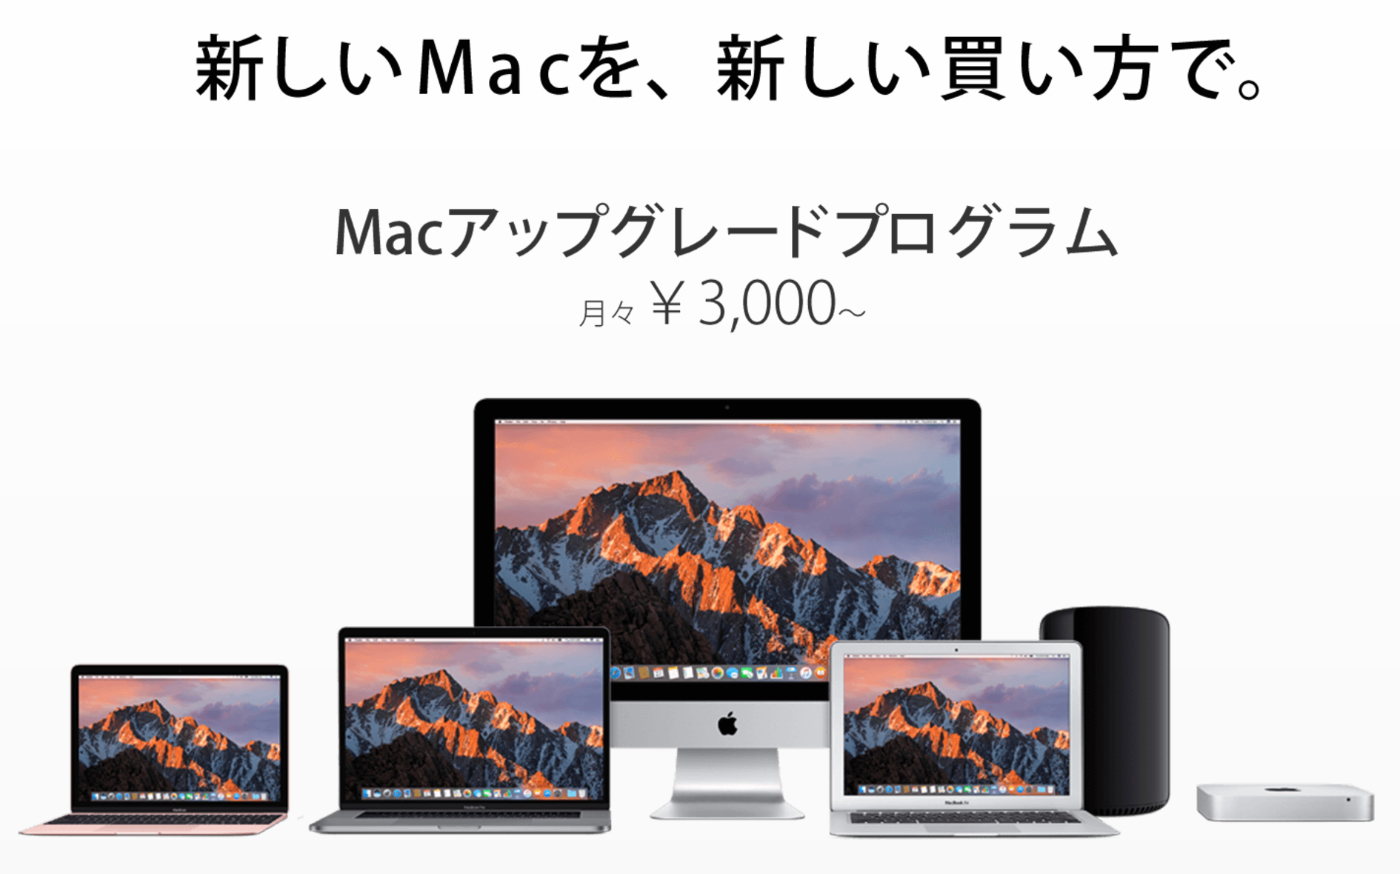 [Apple]ビックカメラとソフマップ 2年ごとにニューMacが入手できる「Macアップグレードプログラム」を提供開始してるので単純比較してみたよ